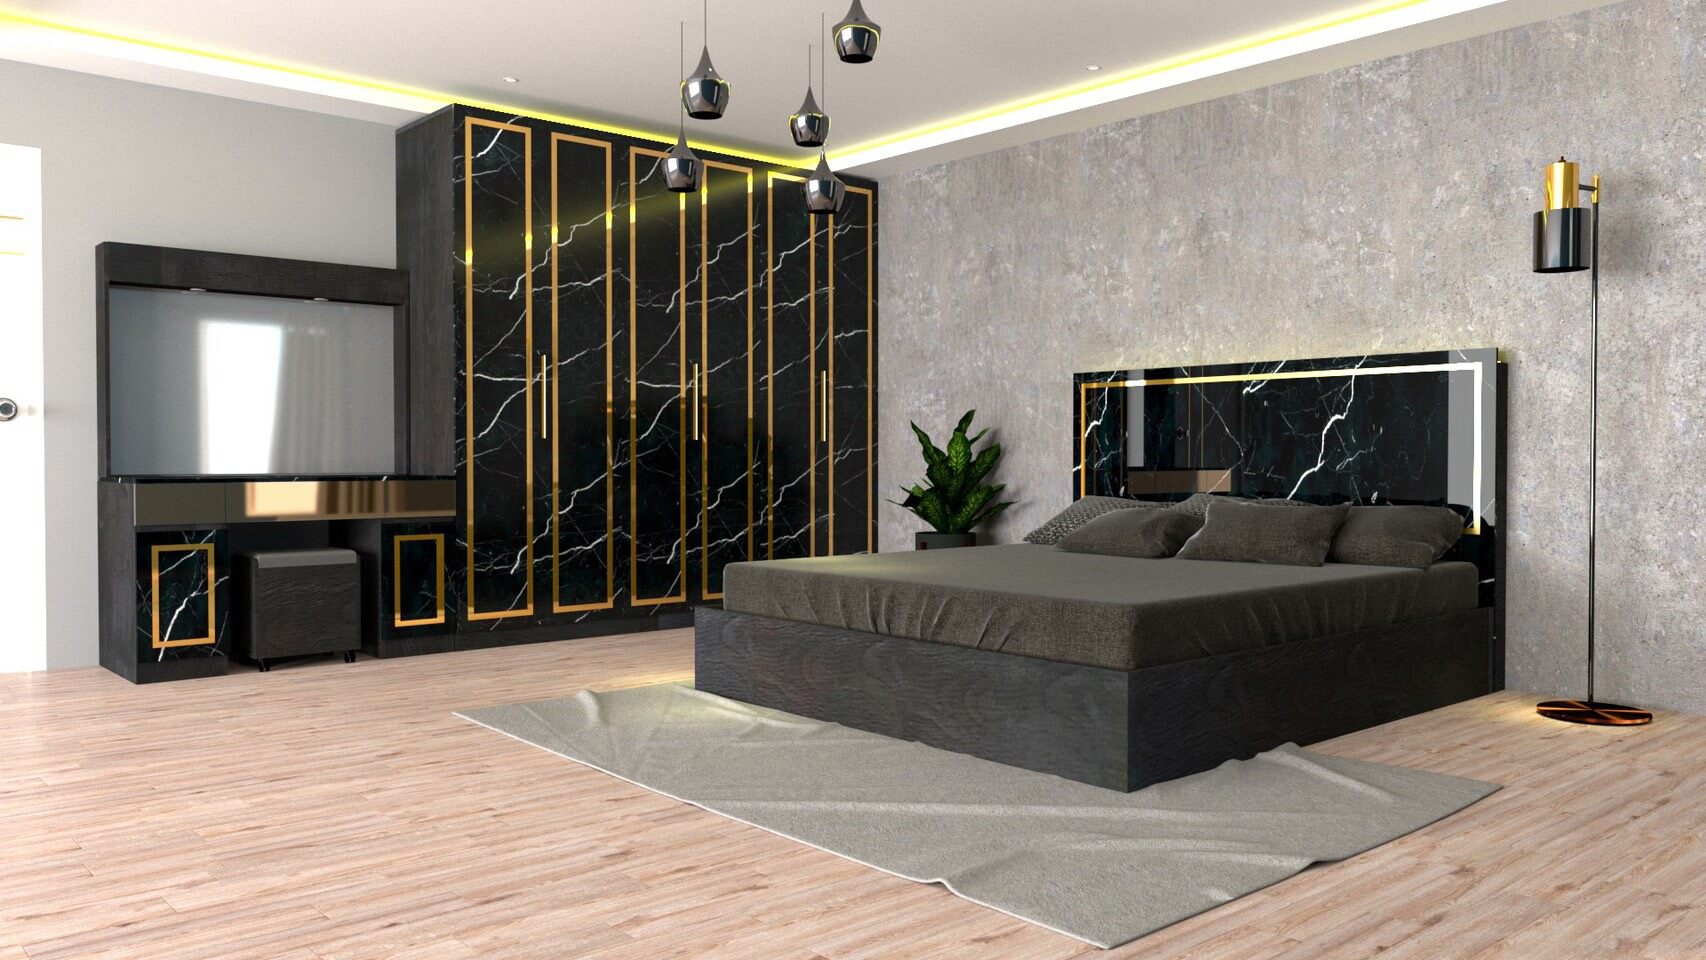 RF Furniture ชุดห้องนอน 6ฟุต รุ่น Jessica A บานทึบ ( เตียง 6ฟุต +ตู้หัวเตียง 2ข้าง+โต๊ะแป้ง 120 ซม.+ตู้เสื้อผ้า 2.40ม. ) Bedroom Set สี AG/DM/GL